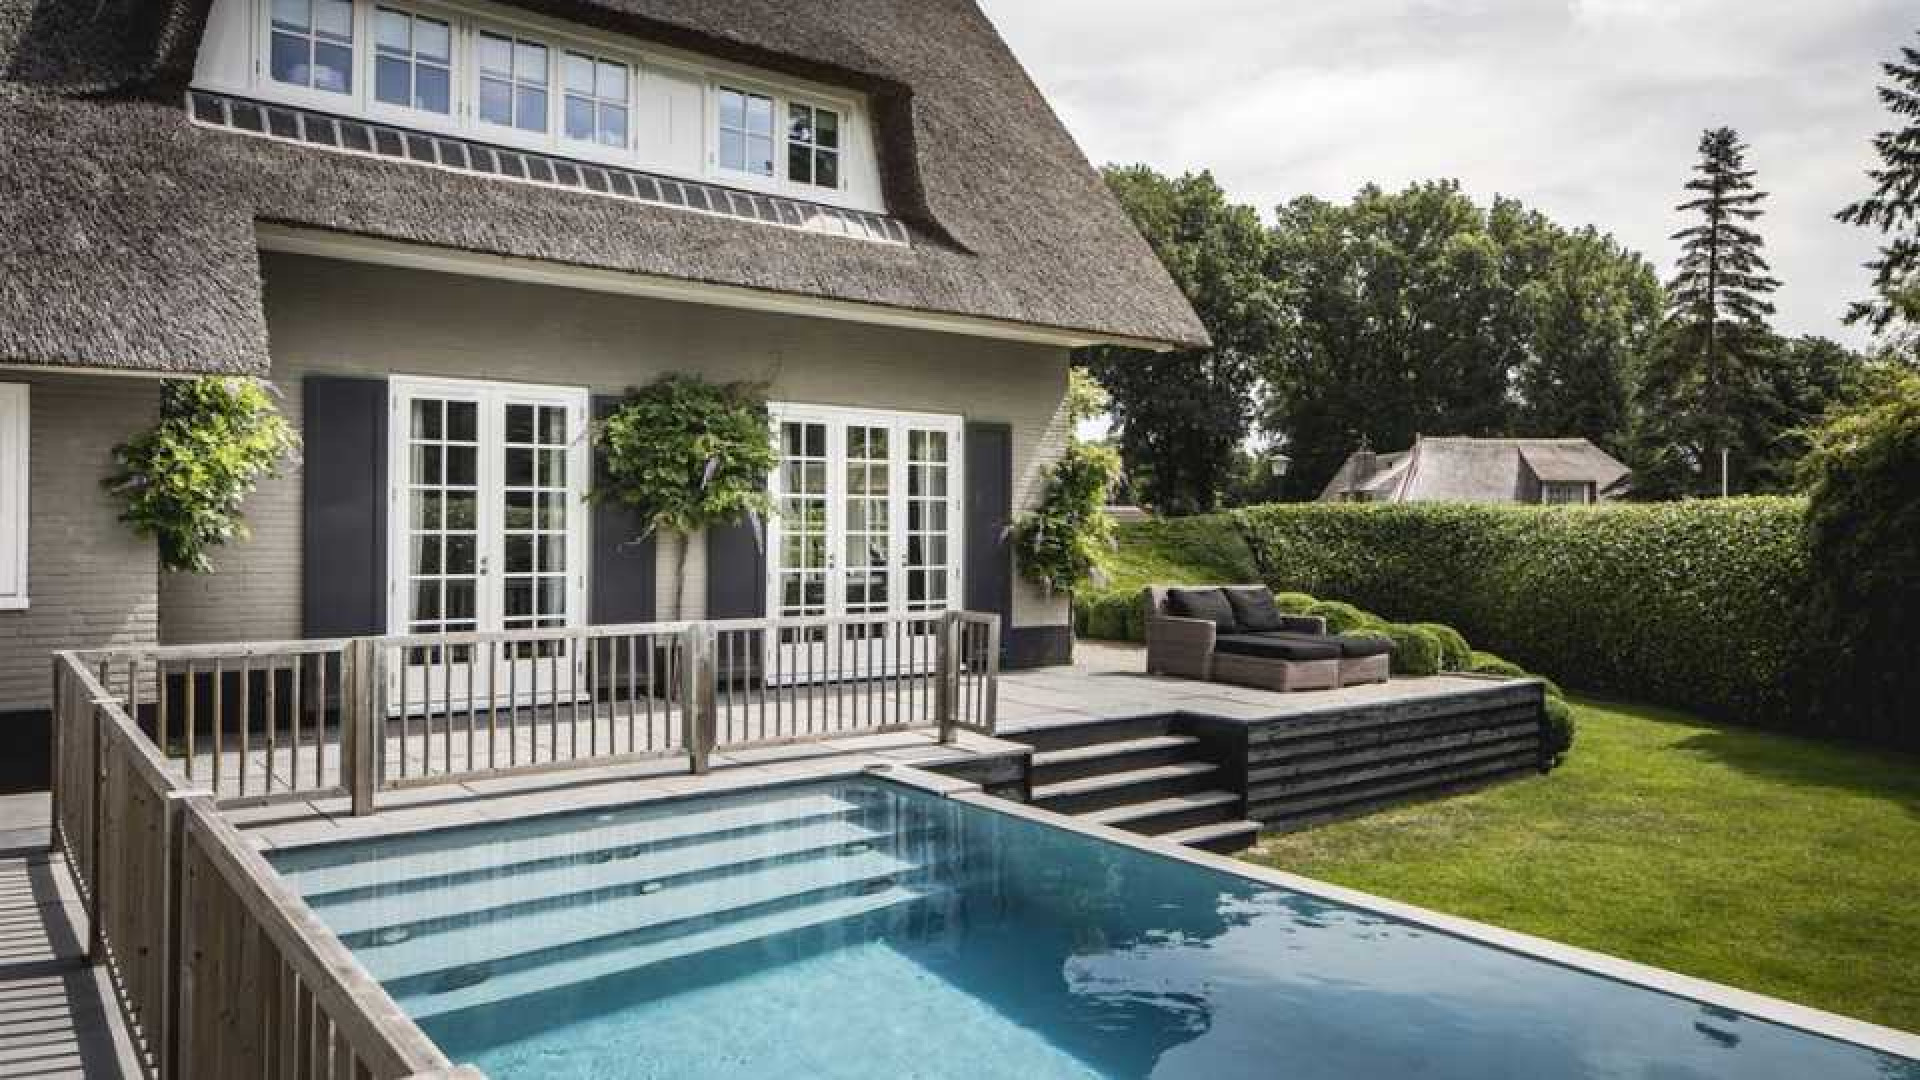 Winston Gerschtanowitz geeft korting op zijn luxe villa. Zie foto's 17